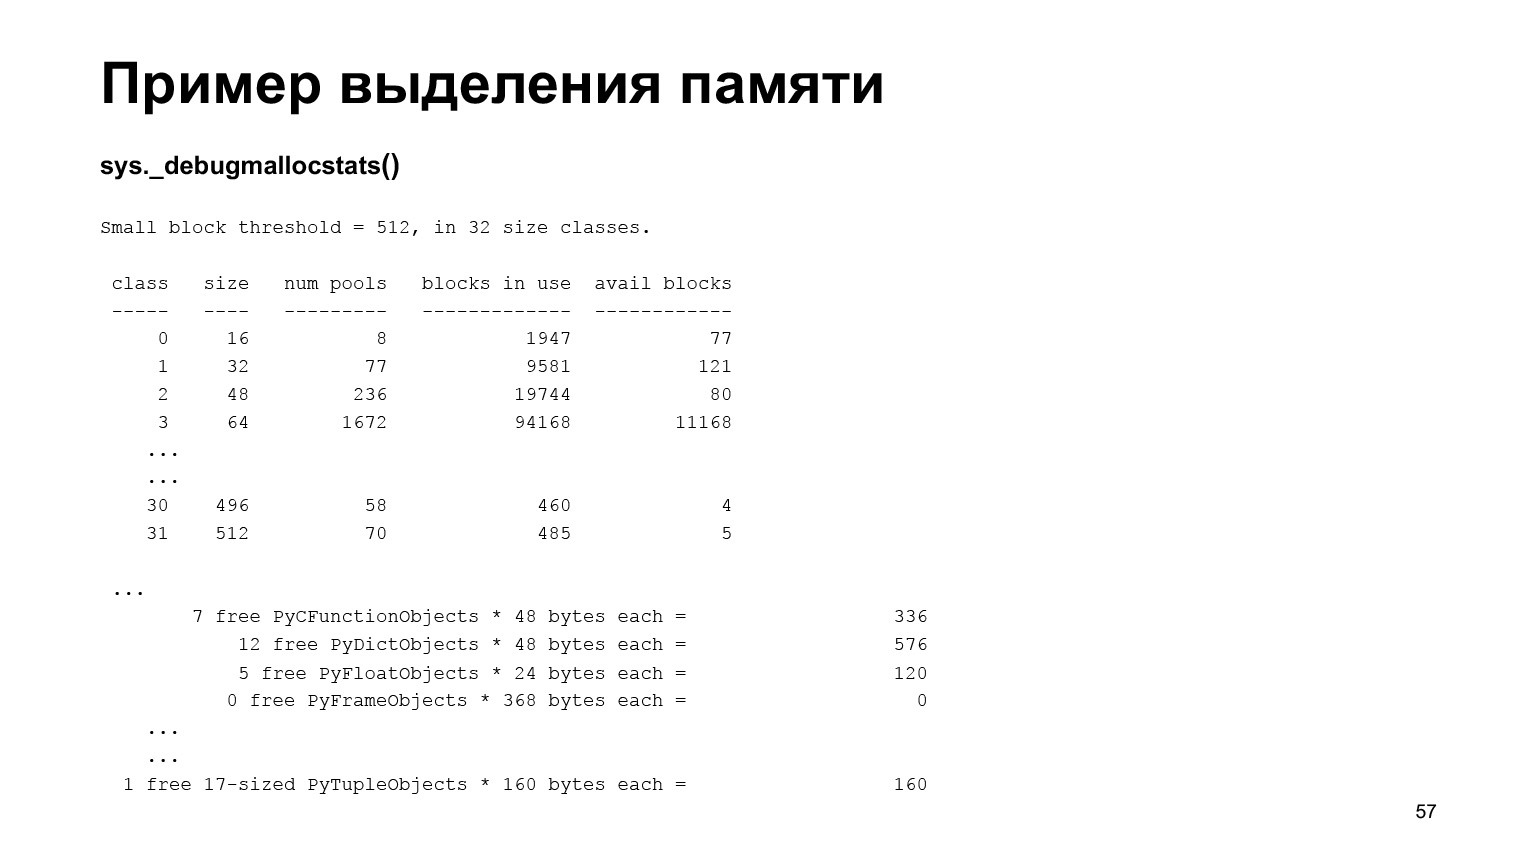 Устройство CPython. Доклад Яндекса - 40